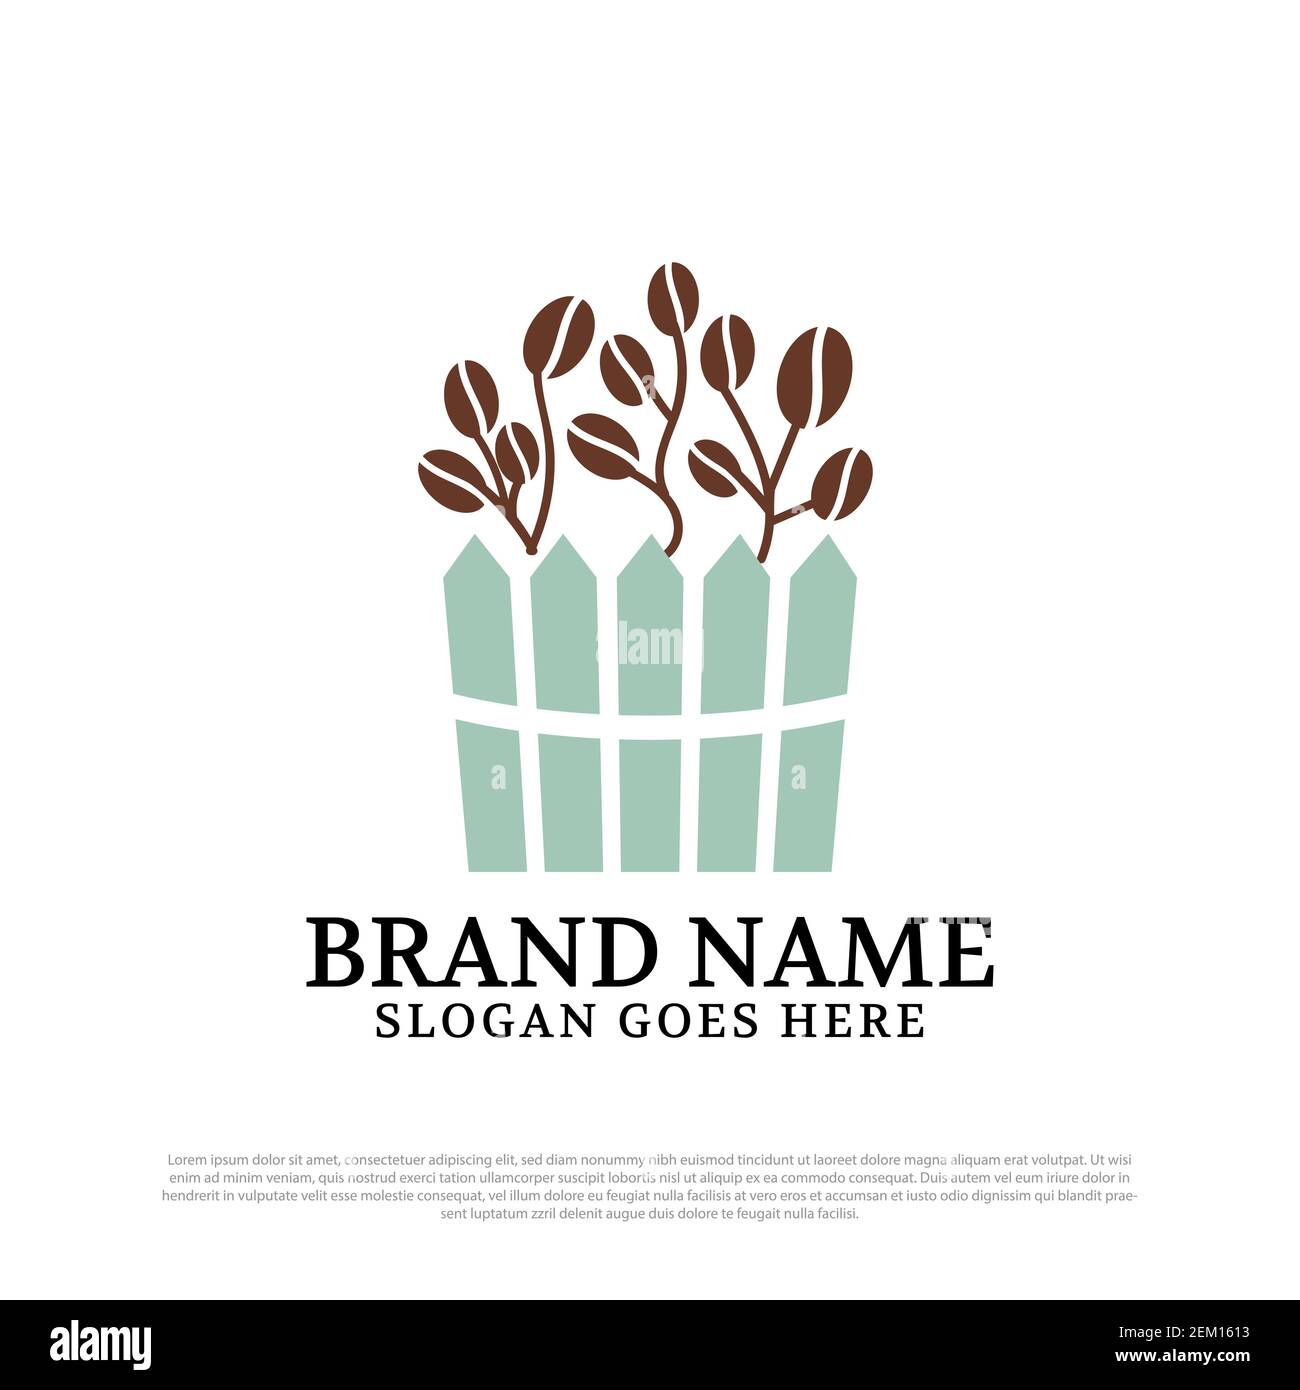 coffee garden logo designs inspirations, beauty coffee farm logo vector illustration Stock Vector